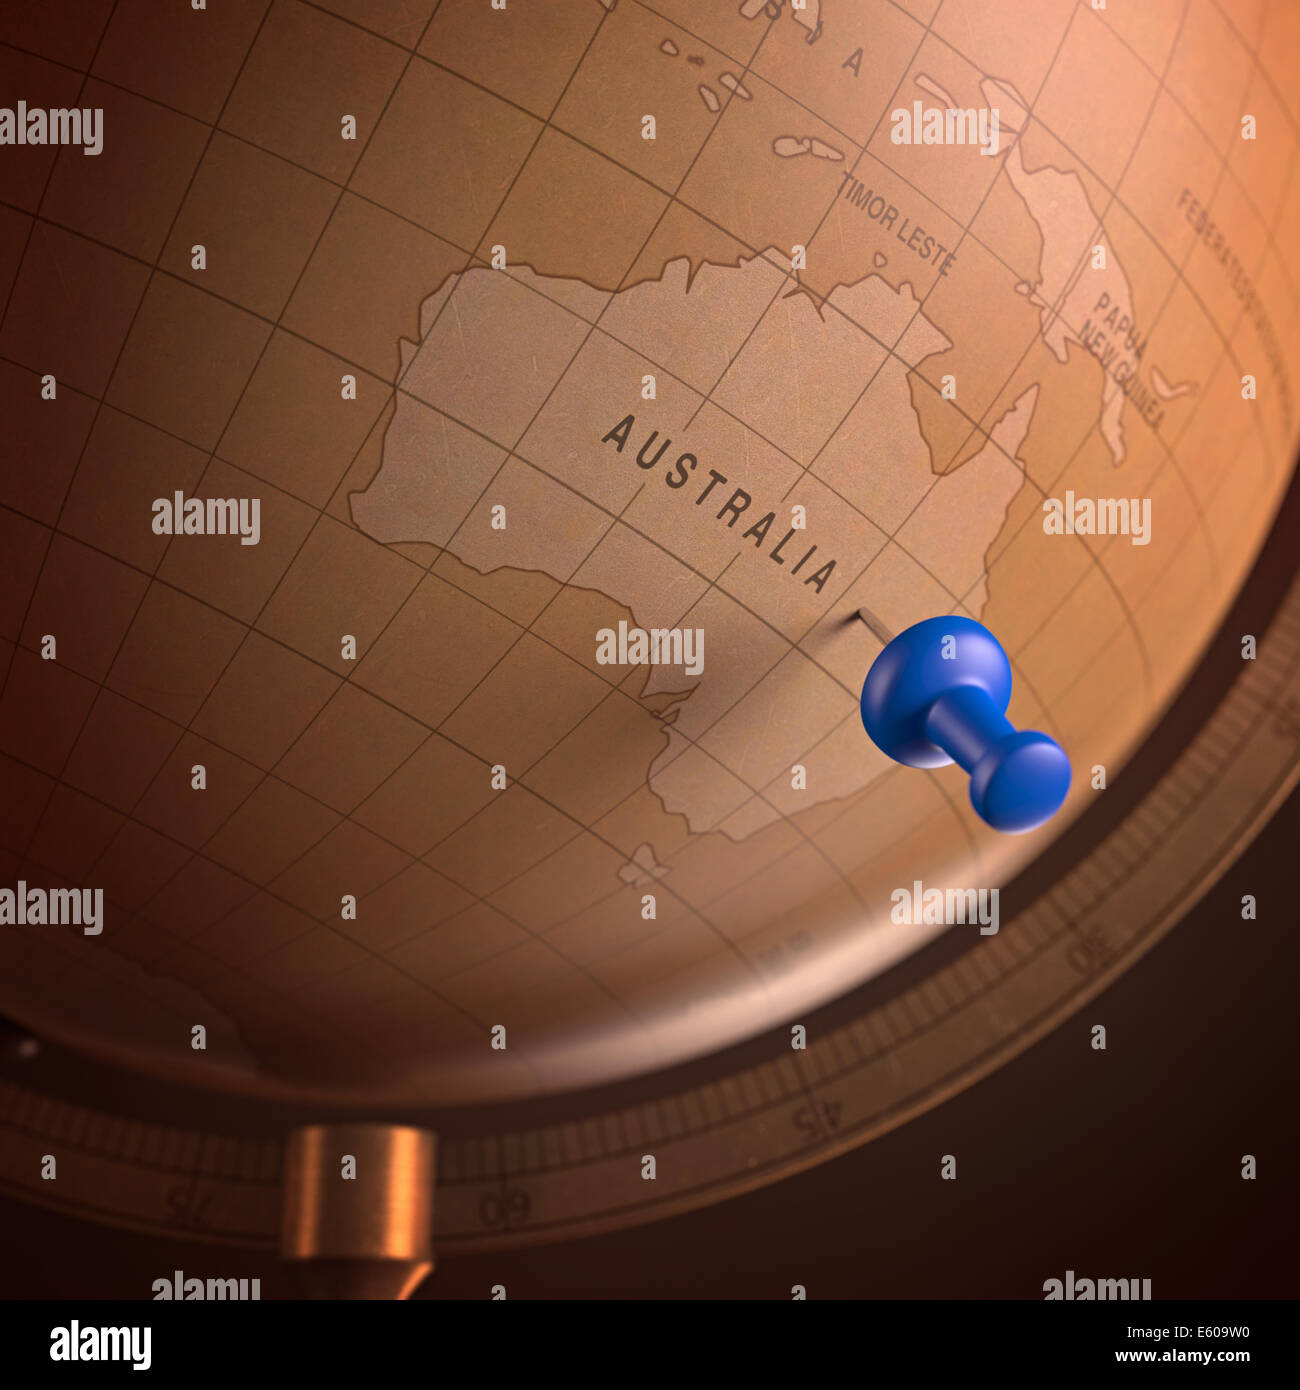 Antiker Globus mit der Australien durch den Stift markiert. Clipping-Pfad enthalten. Stockfoto